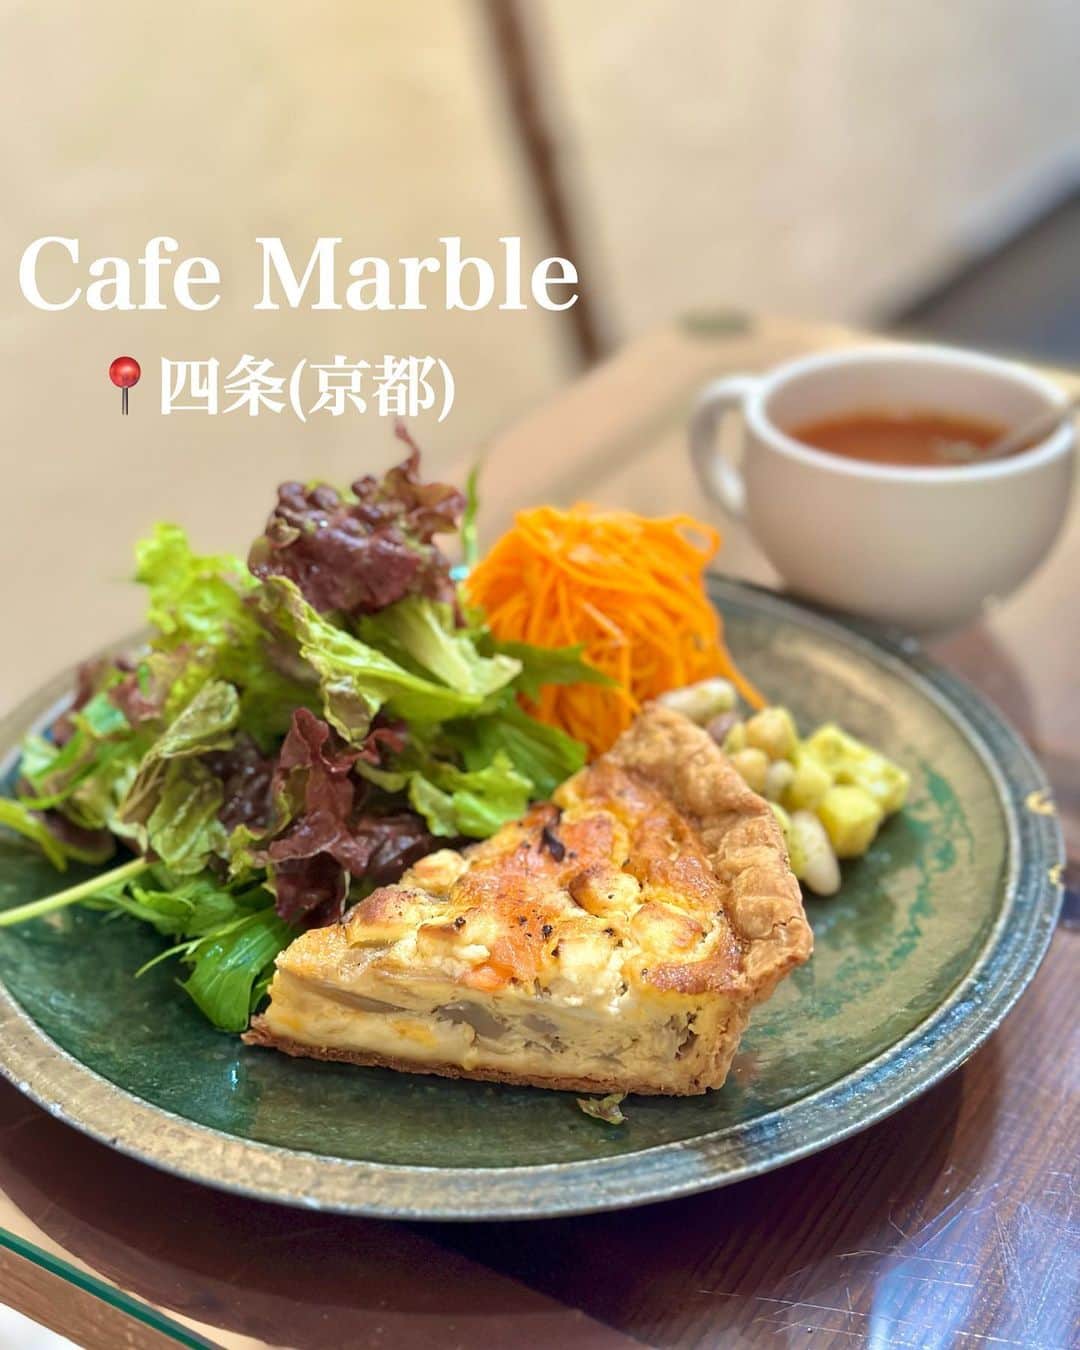 白井佑奈のインスタグラム：「🥚  京都で見つけた、ステキな古民家ランチを紹介！    【用途】デート、友人、女子会    *☼*―――――*☼*―――――*☼*    注文したもの   ＊Lunch Special  キッシュプレート(季節野菜のキッシュ)    *☼*―――――*☼*―――――*☼*    Cafe Marble ( @cafemarble_kyoto )さんのランチがとっても良すぎたので保存オススメ❤️‍🔥    キッシュプレートには、グリーンサラダ/にんじんサラダ/お豆/スープが付いてきたよ！    季節によって変わる野菜に、チーズいっぱいのキッシュは旨みがたくさん😍    自家製だというサクサクなパイ生地も絶品✨    サイドのサラダやスープからお野菜を沢山食べられるからヘルシーな気分🥗❤️笑      おなかいっぱいで食べられなかったけど、タルトも絶対美味しいと思う…😭💗      古民家カフェなので時間が進むのがゆっくり感じる🫶落ち着いた時間を過ごしたい時にオススメだよ。    🏠 Cafe Marble 仏光寺店  📍四条駅 ⏰ 月~土11:00~21:00(L.O.20:30)日11:00~20:00(L.O.19:30)  🗓Instagram  ＊＊＊＊＊＊＊＊＊＊  お仕事依頼はDMへ💌💭 ＊＊＊＊＊＊＊＊＊＊    プロフィールリンクはこちら👉 @yuna_smile0130      #カフェマーブル#京都#京都グルメ#京都カフェ#京都ランチ#京都観光#京都旅行#京都スイーツ#京都キッシュ#京都古民家カフェ#古民家カフェ#四条カフェ#四条ランチ#四条グルメ#烏丸ランチ#烏丸カフェ#京都タルト#Kyoto#kyotojapan#CafeMarble」